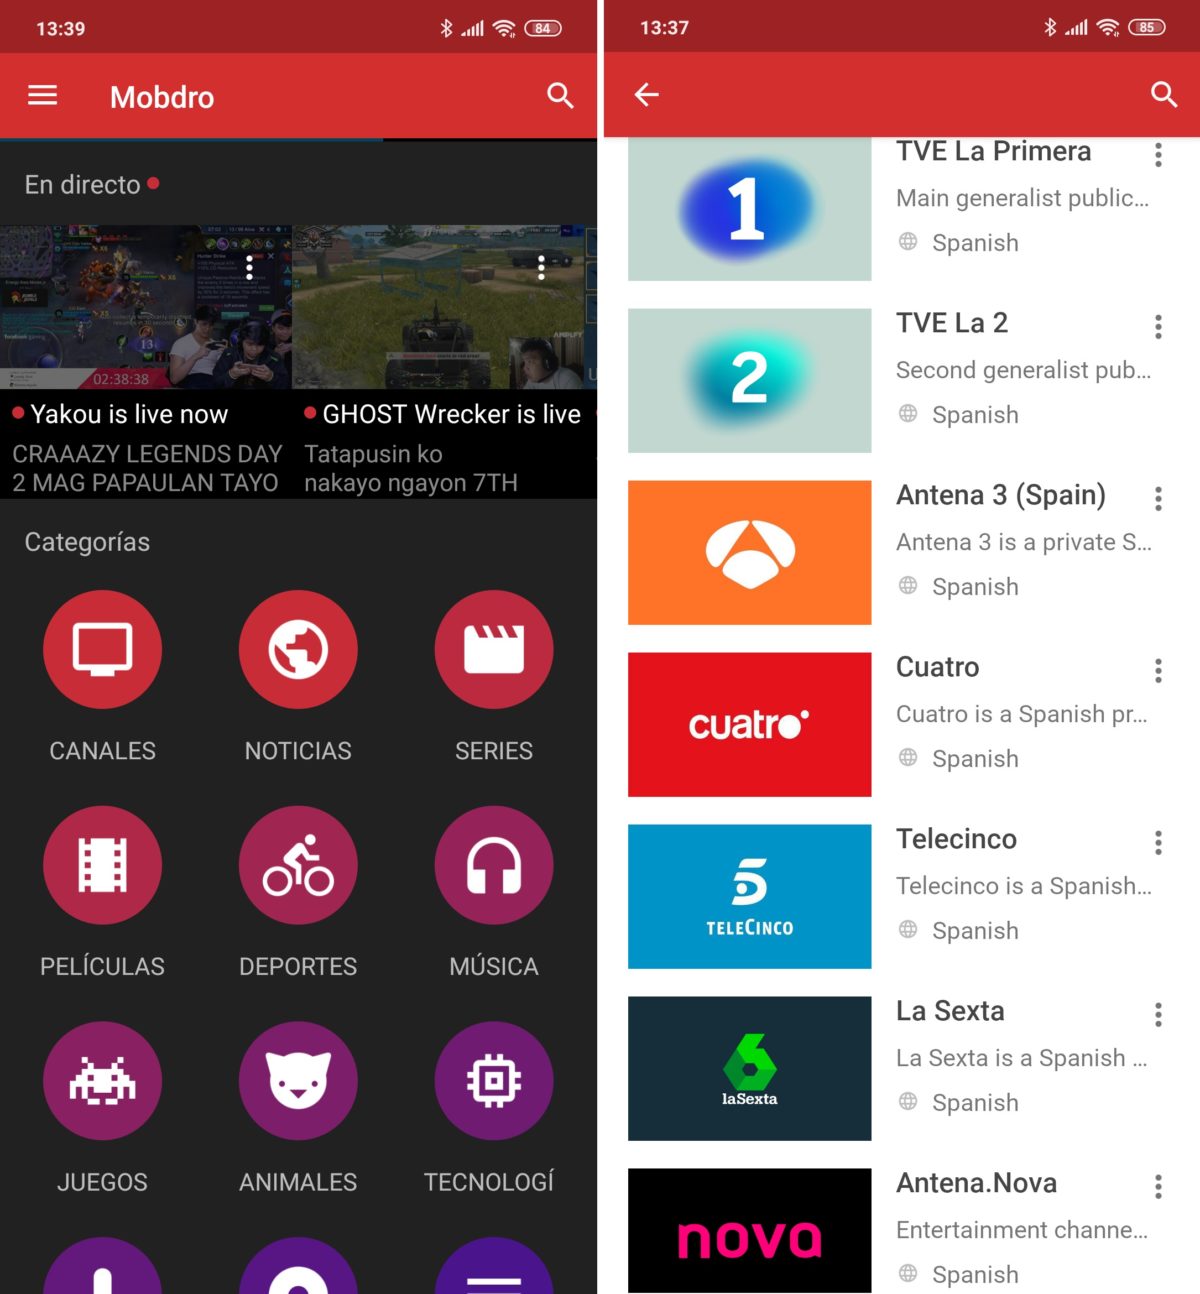 Las 5 mejores apps para ver la TV en tu móvil Android gratis